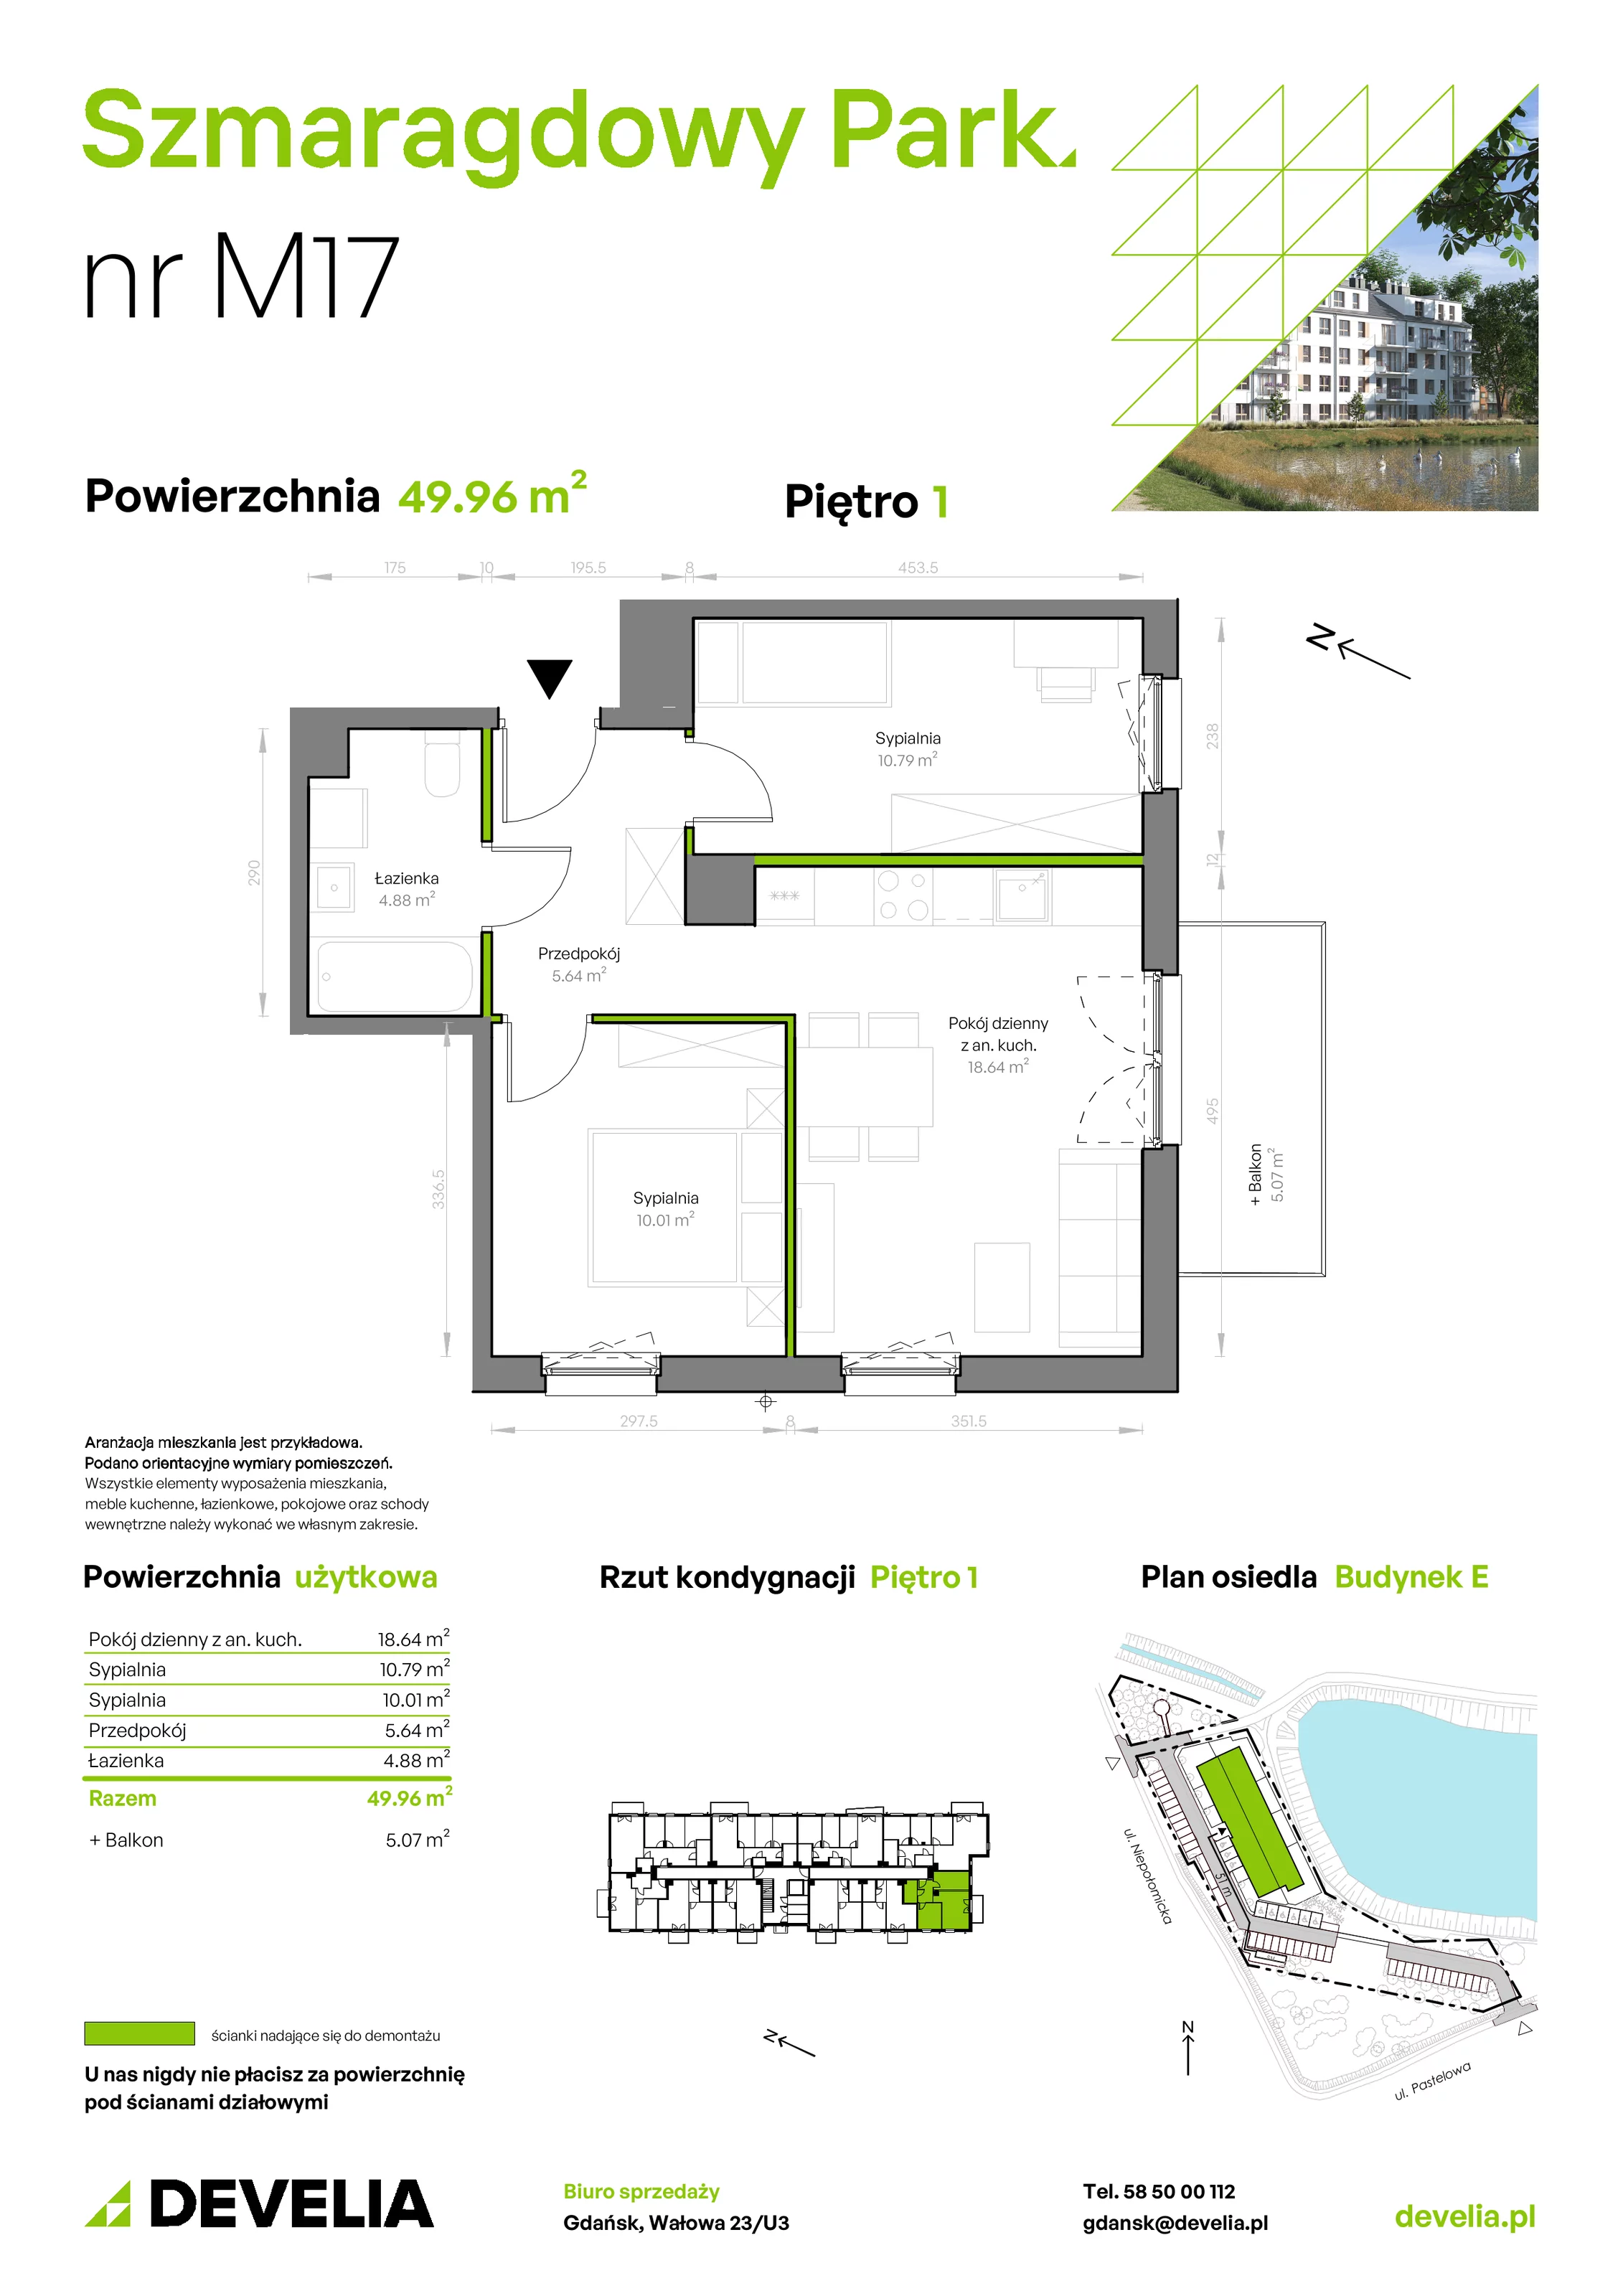 Mieszkanie 49,96 m², piętro 1, oferta nr E/017, Szmaragdowy Park, Gdańsk, Orunia Górna-Gdańsk Południe, Łostowice, ul. Topazowa 2